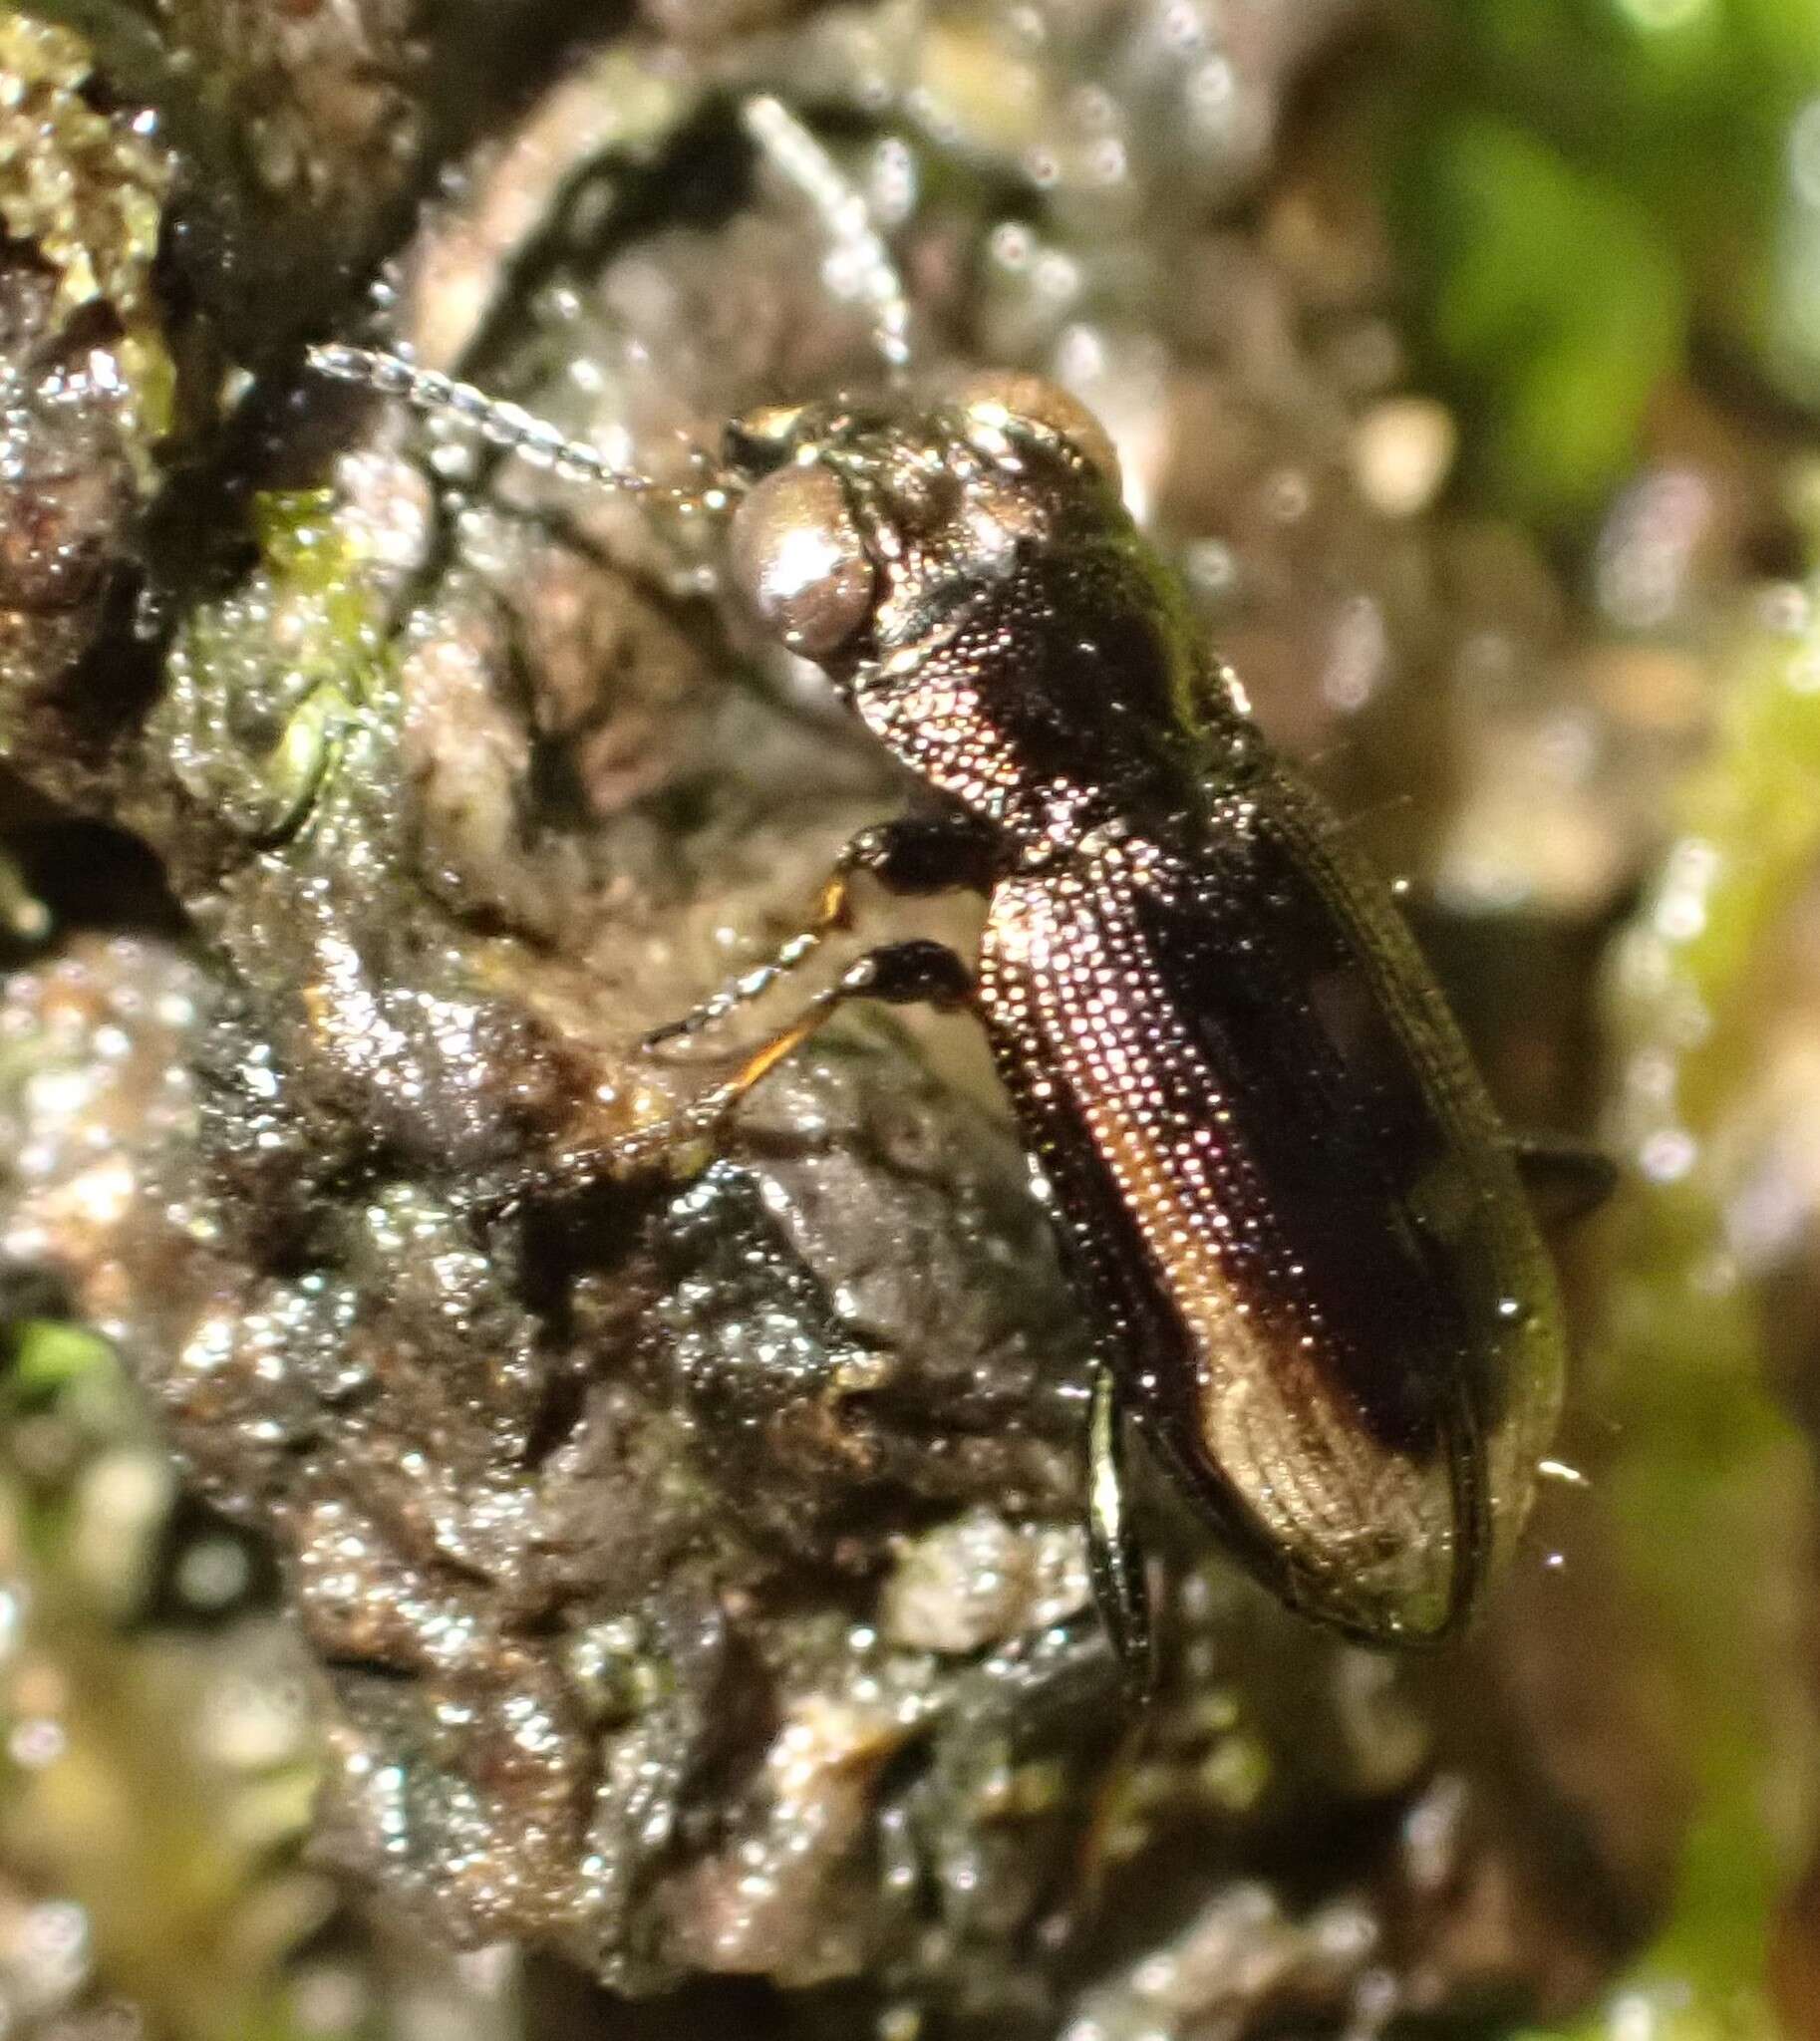 Image of Big-Eyed Bronze Beetle